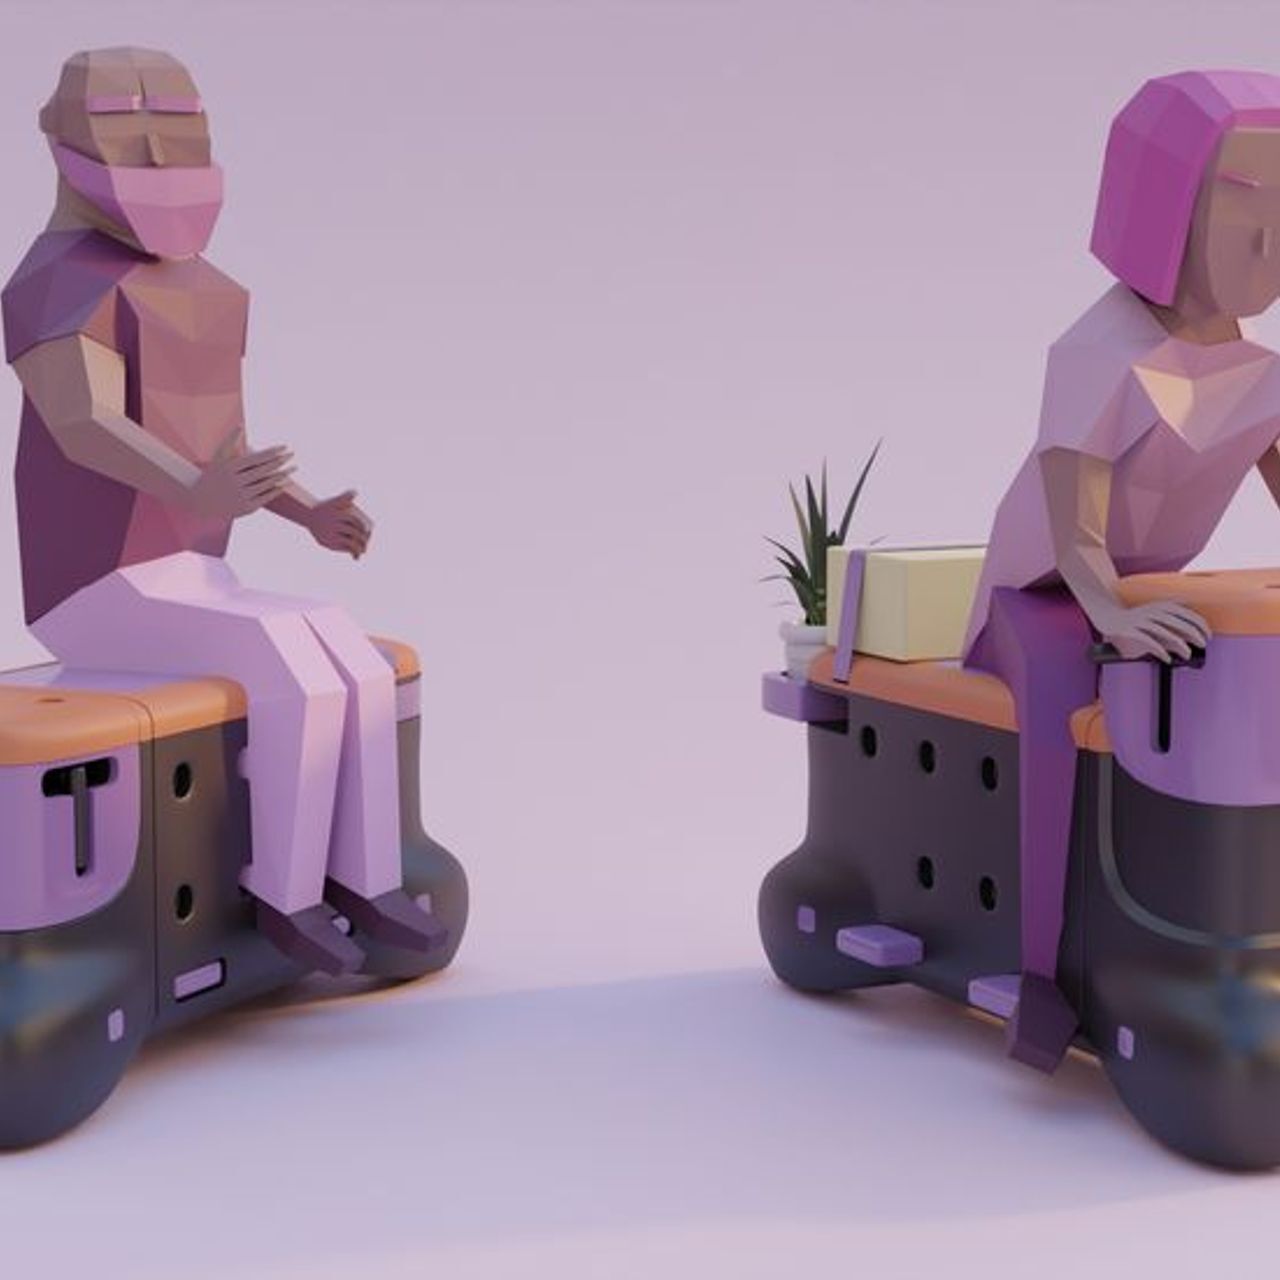 'TOD', tasarım öğrencileri Corentin Janel ve Guillaume Innocenti tarafından oluşturulan scooter-bench'tir.